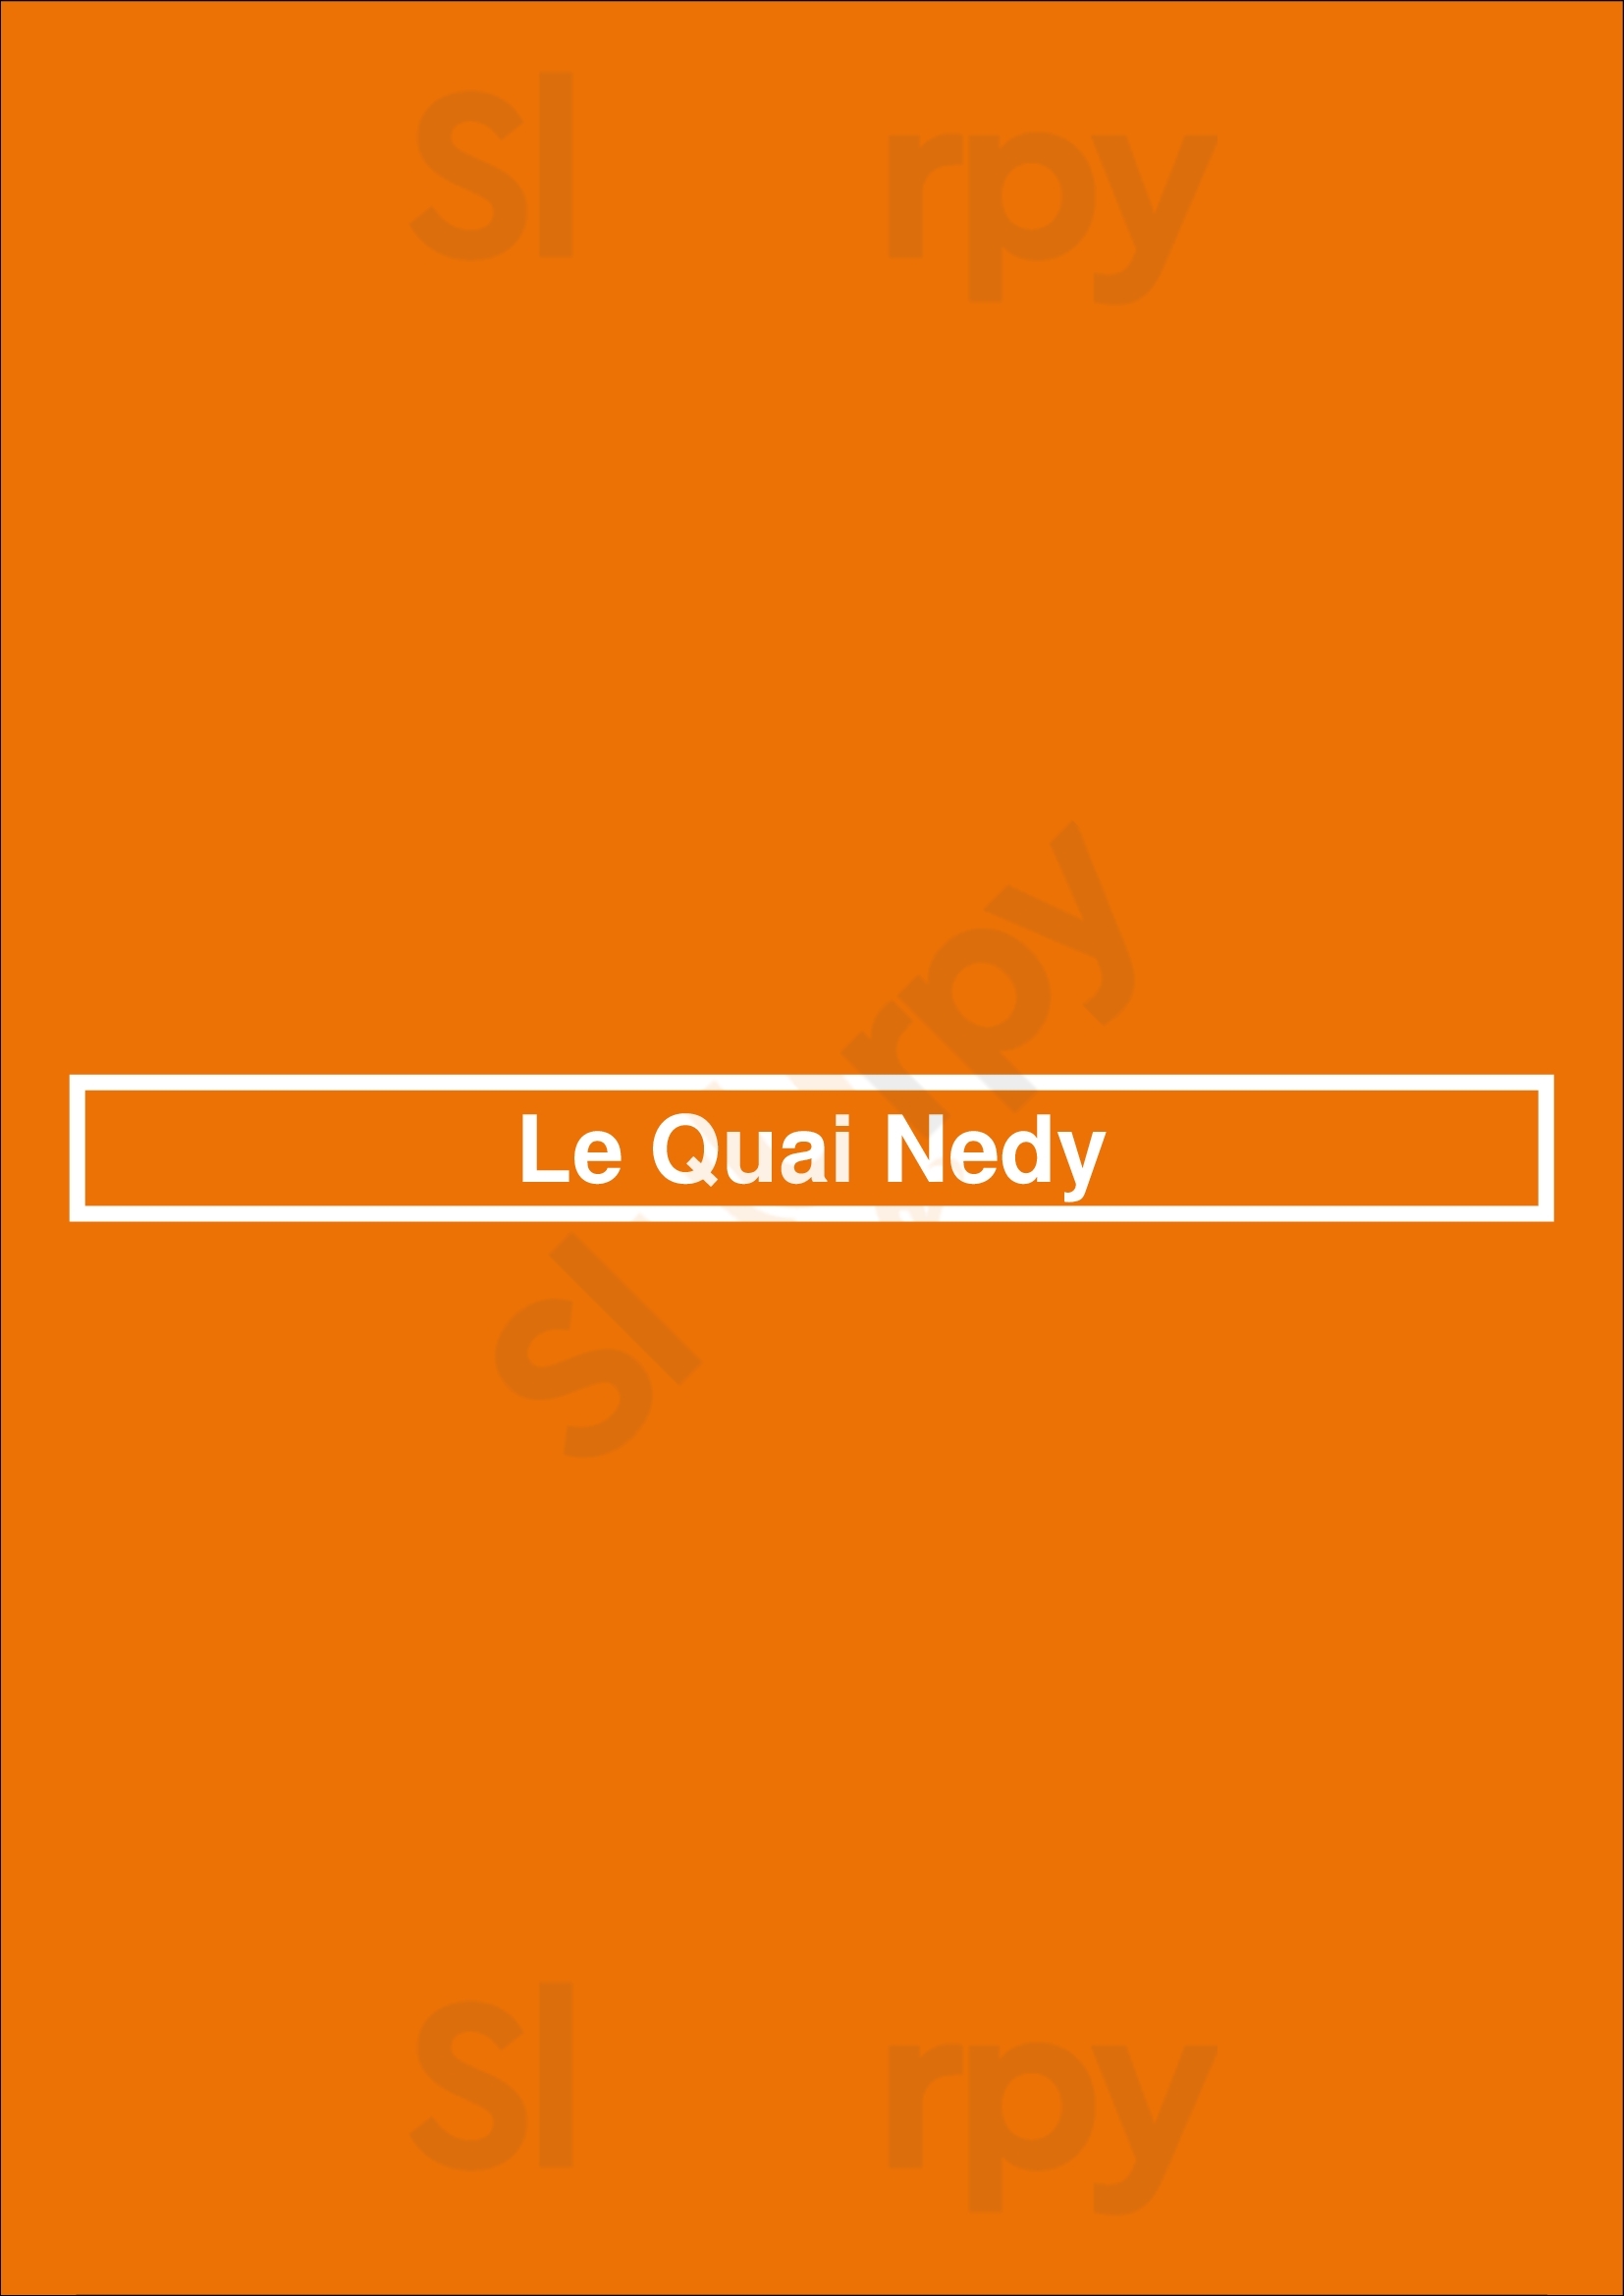 Le Quai Nedy Paris Menu - 1